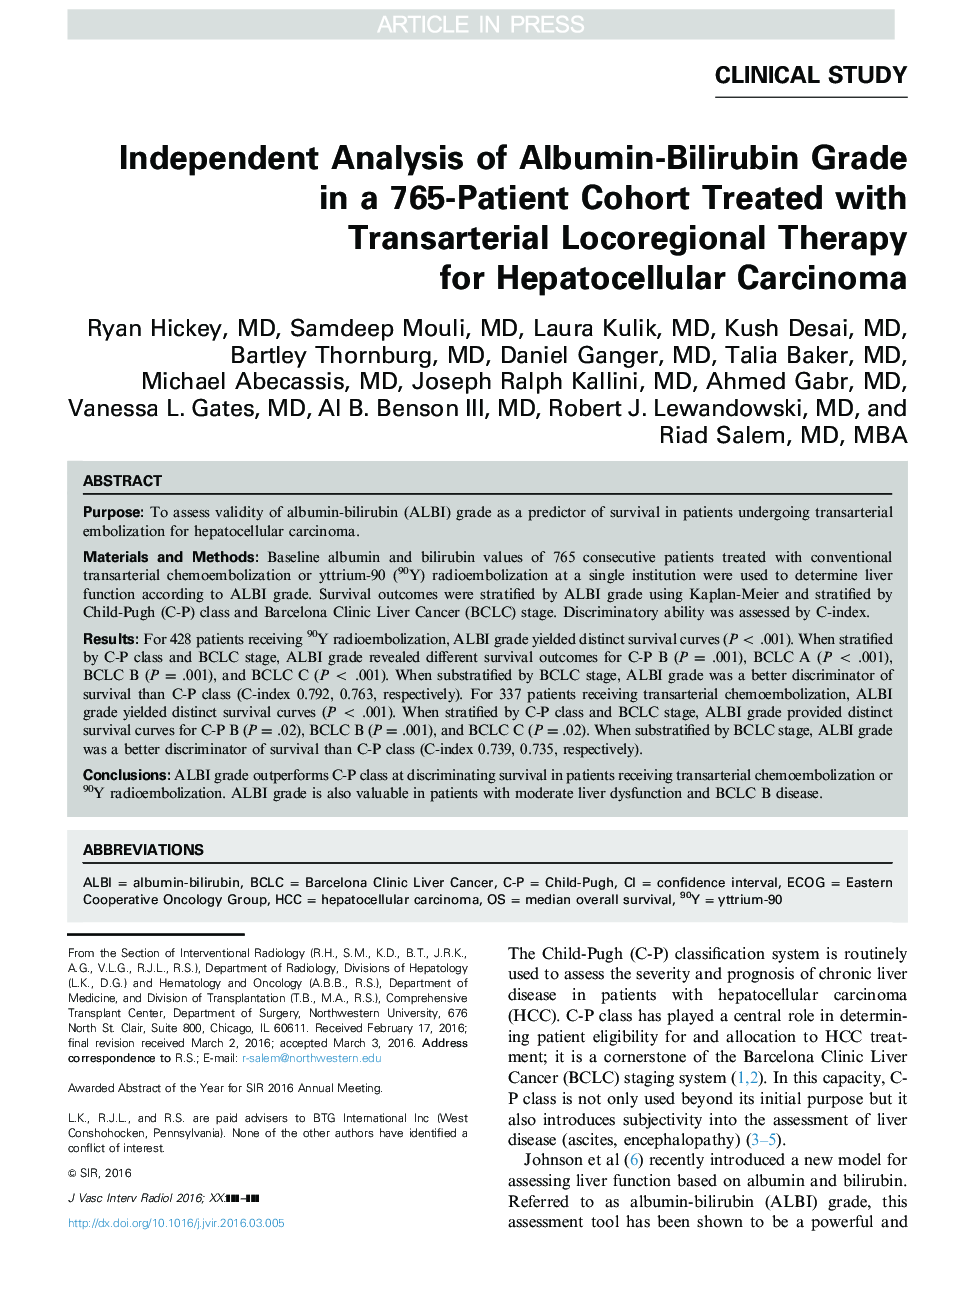 تجزیه و تحلیل مستقل از درجه آلبومین-بیلیروبین در یک گروه سکته 765 بیمار درمان شده با درمان محلی منطقه ای برای کارسینوم هپاتوسلولار 